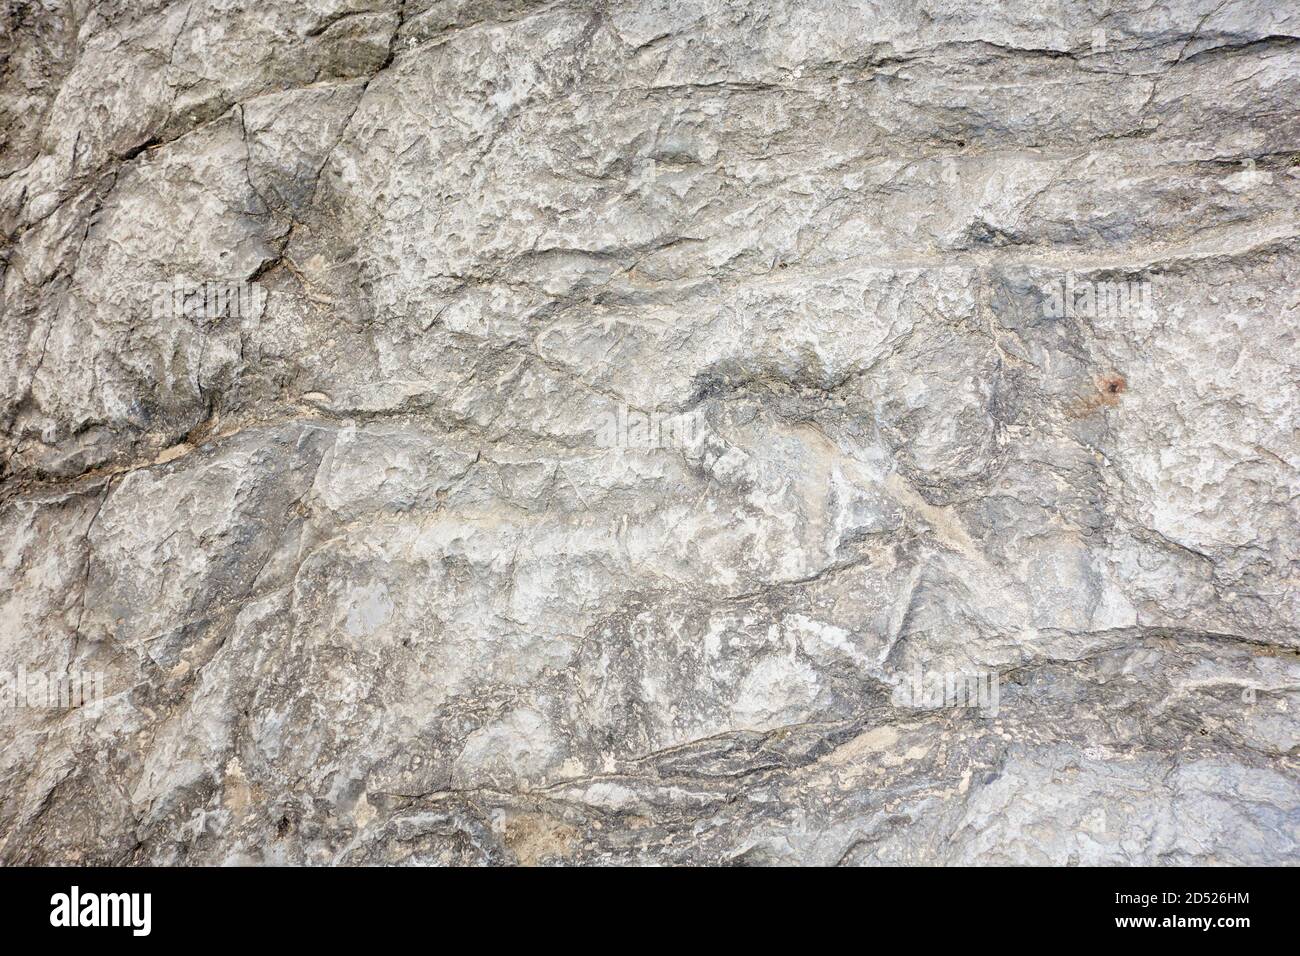 Echte fossile Dinosaurier Spuren auf einem versteinerten Flussbett ausgesetzt. Asturien. Spanien. Stockfoto